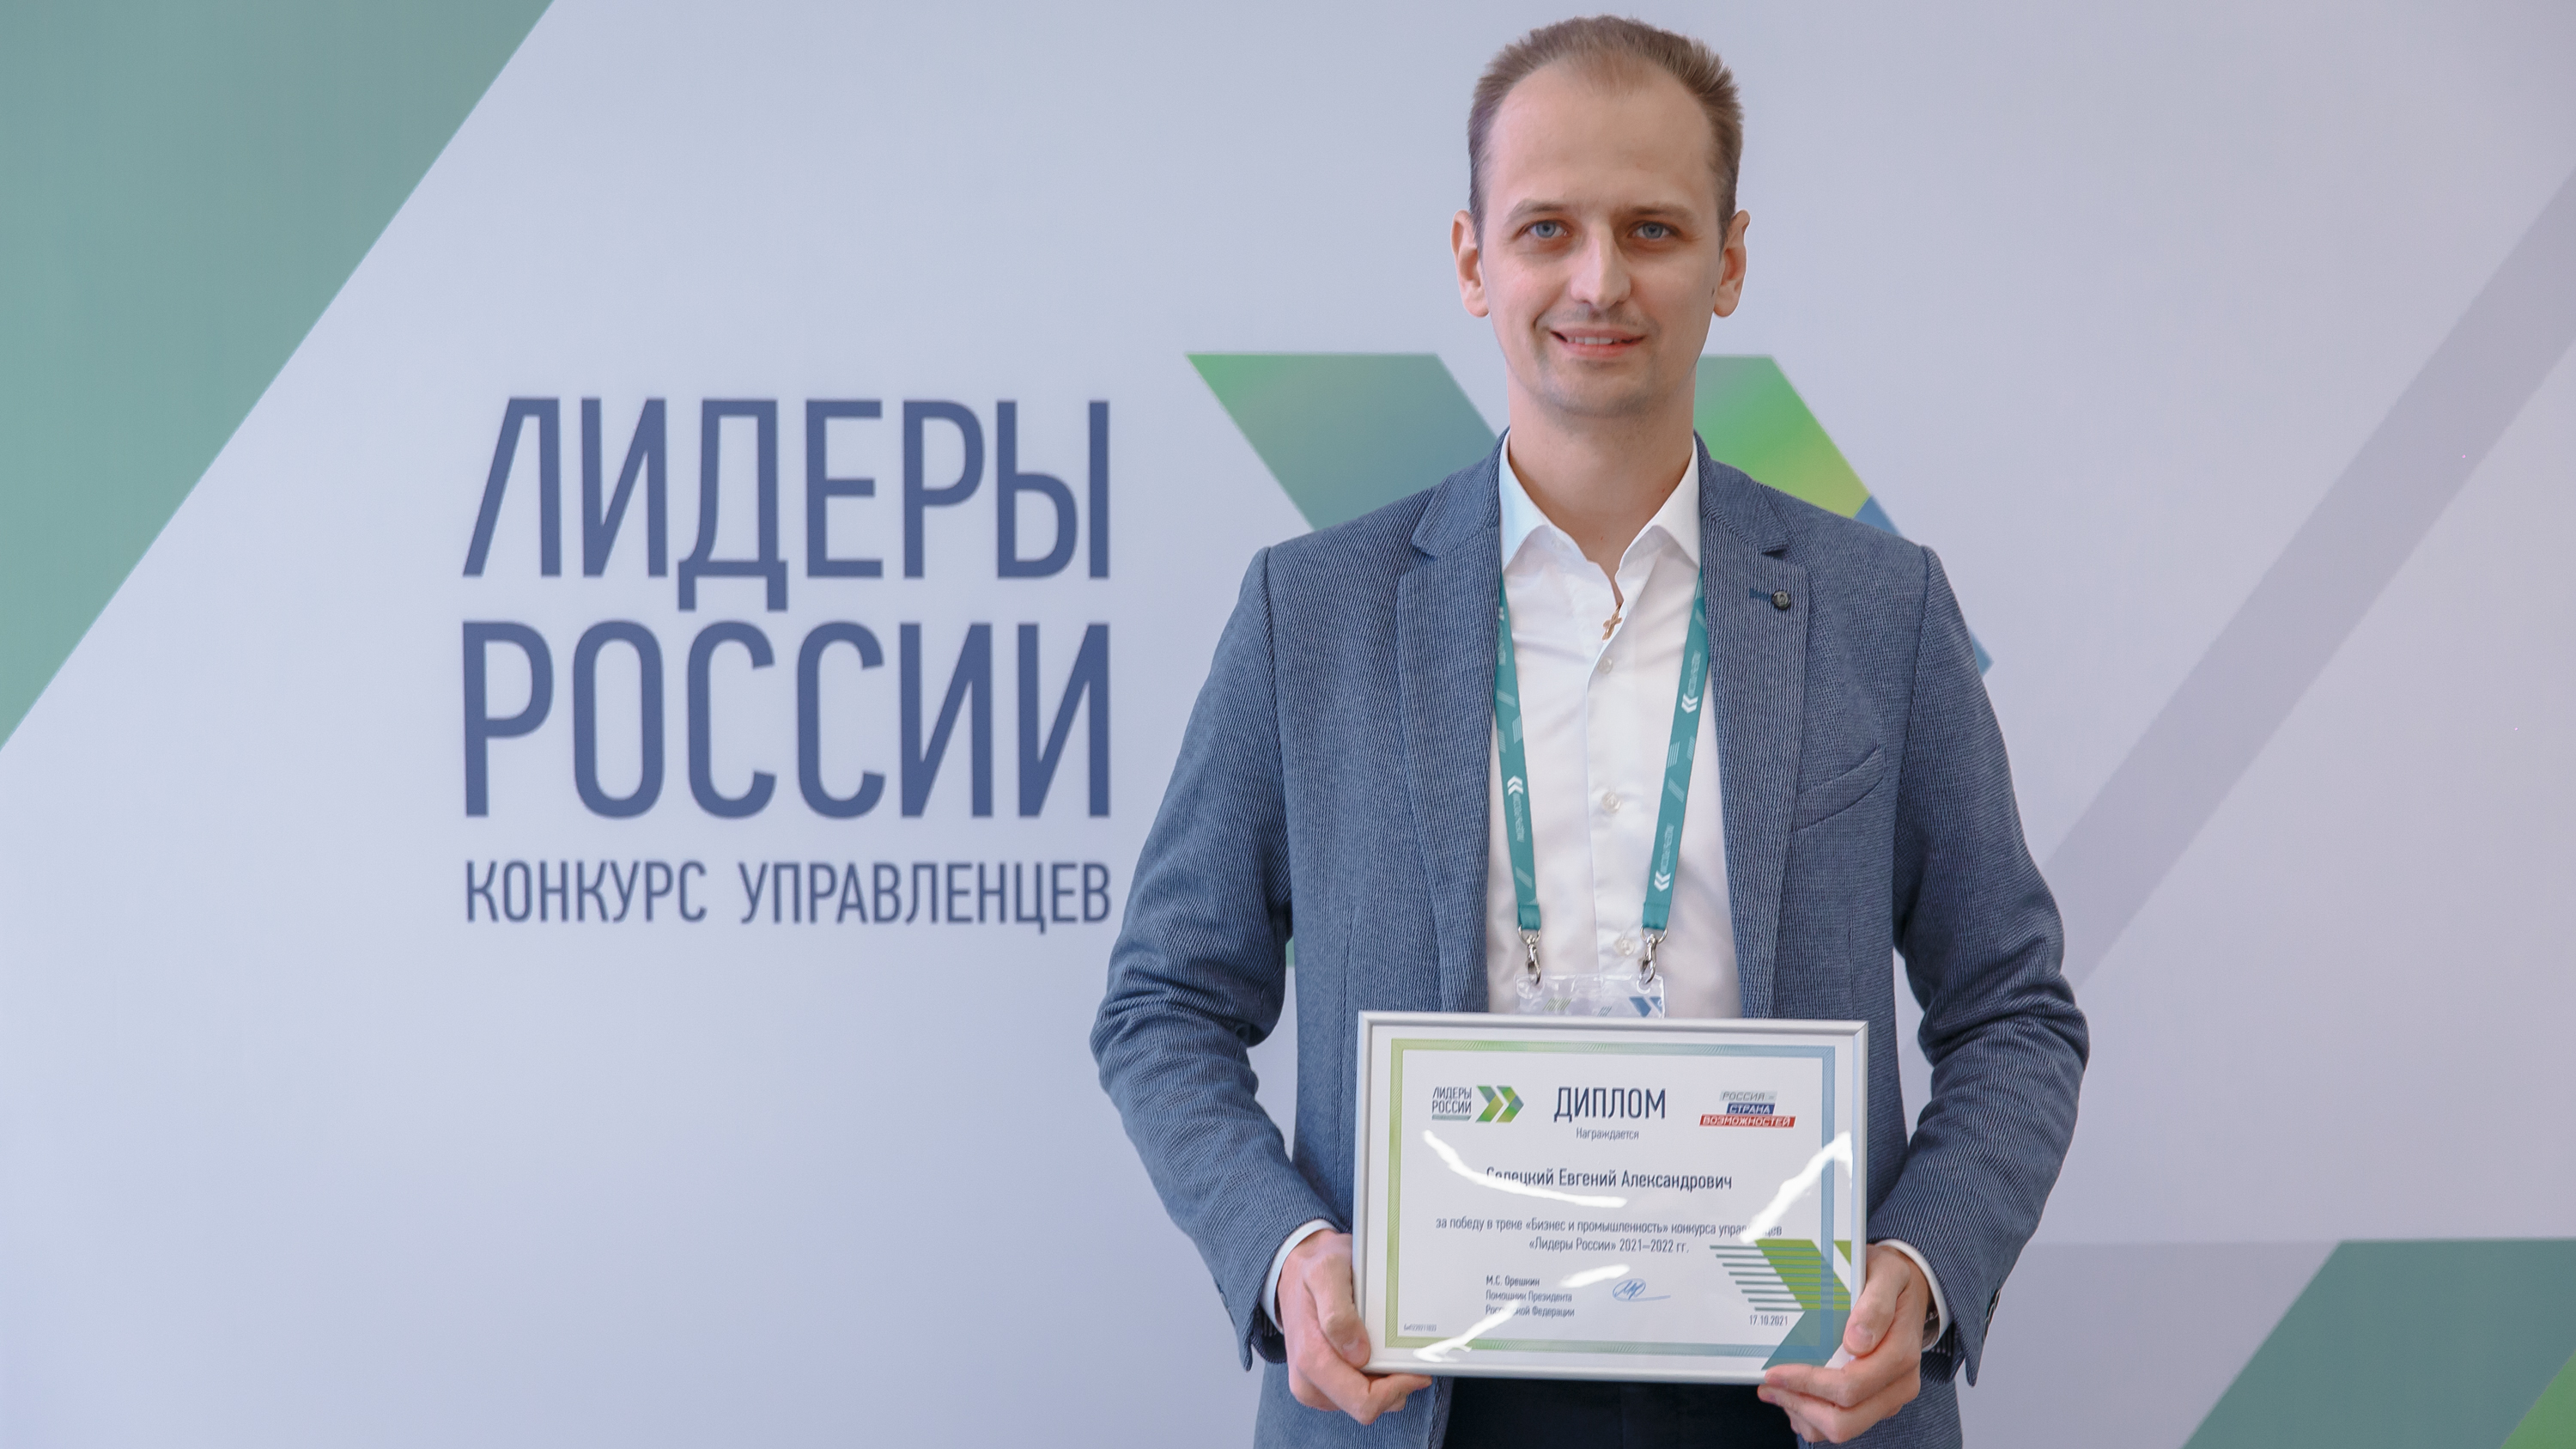 Два южноуральца стали победителями конкурса «Лидеры России»